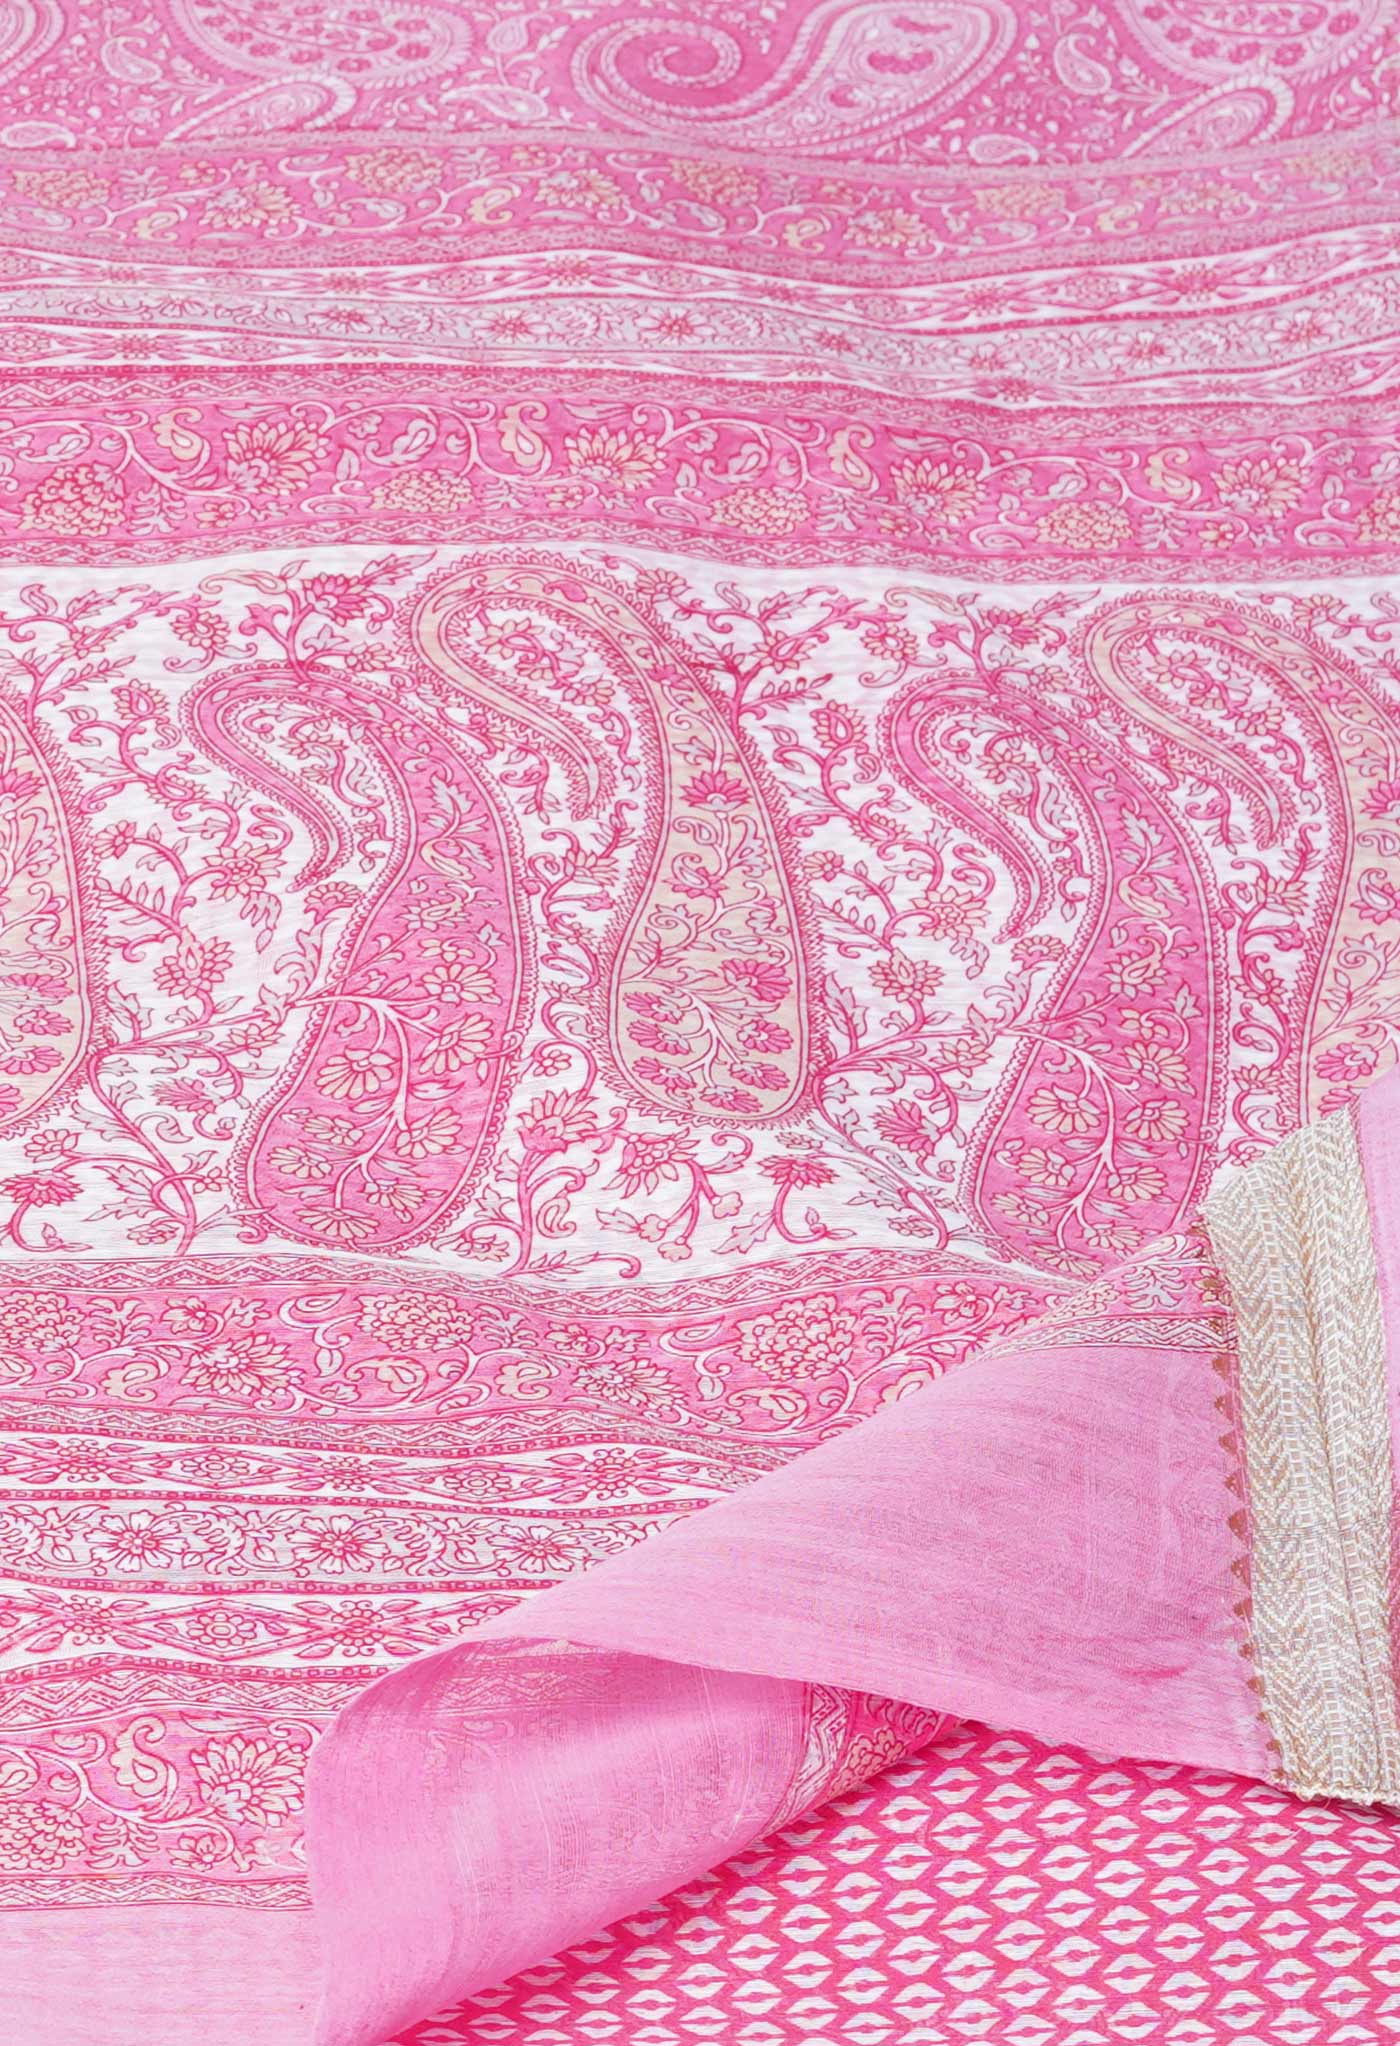 Pink Screen Printed Chanderi Sico Saree